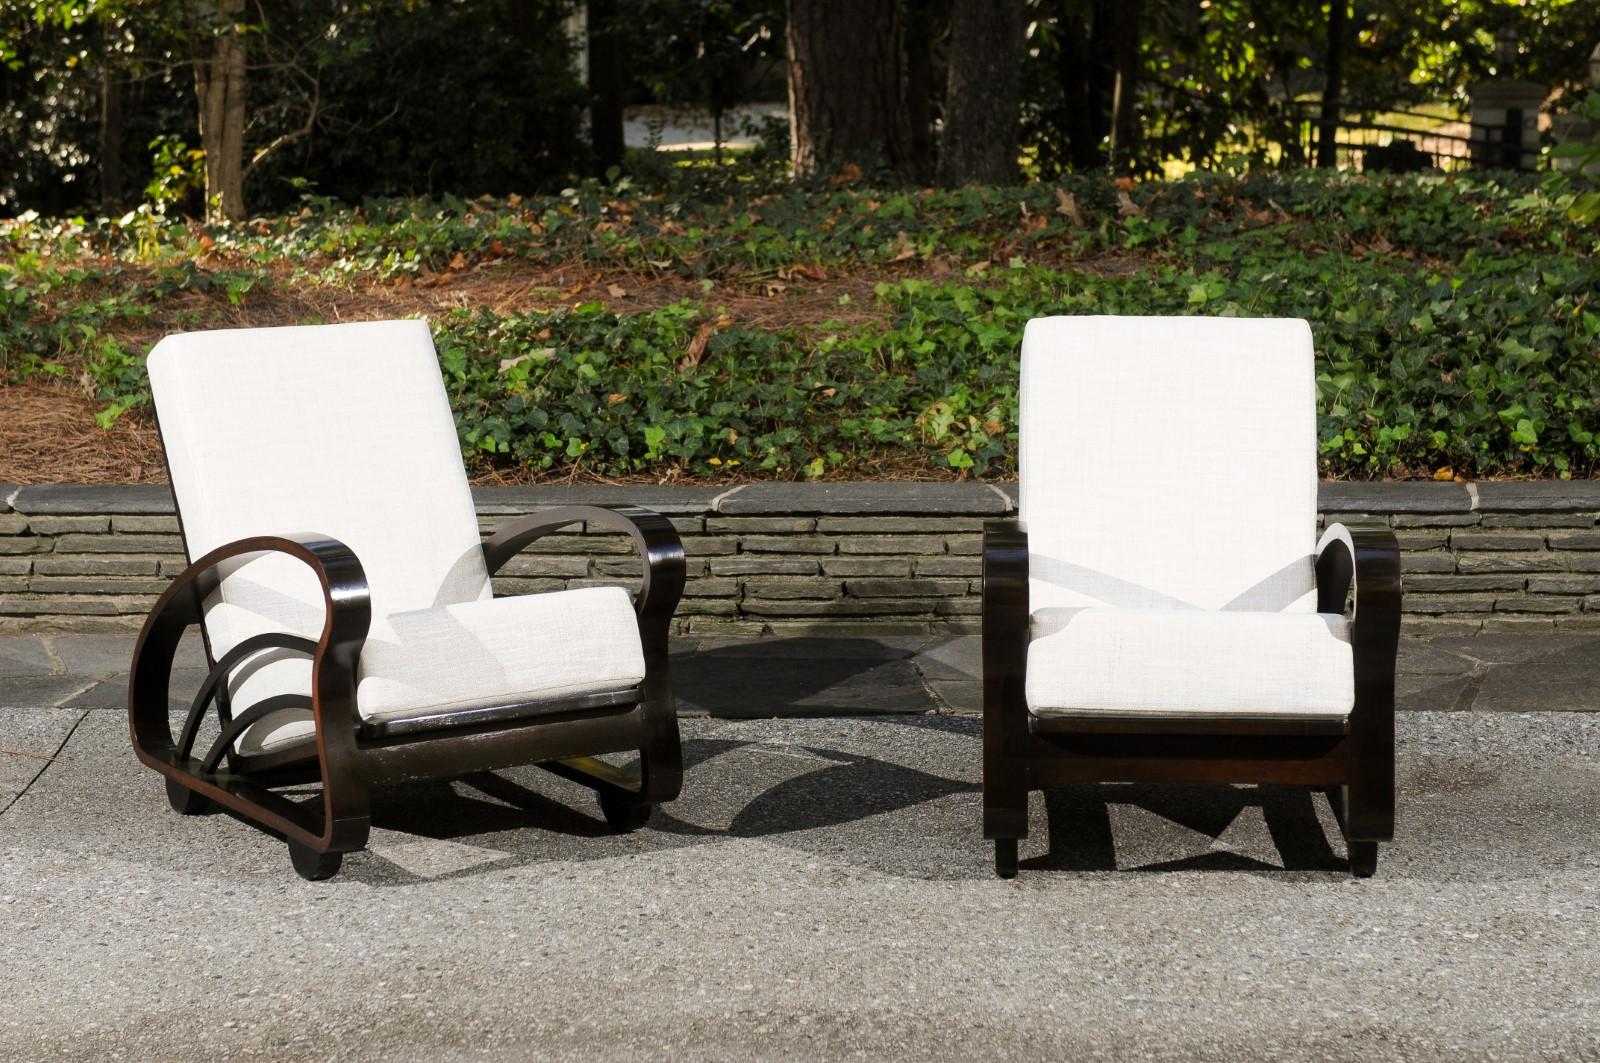 Ces magnifiques chaises longues sont expédiées telles qu'elles ont été photographiées par des professionnels et décrites dans le texte de l'annonce : Méticuleusement restaurées et tapissées par des professionnels. Un service de tissu sur mesure est